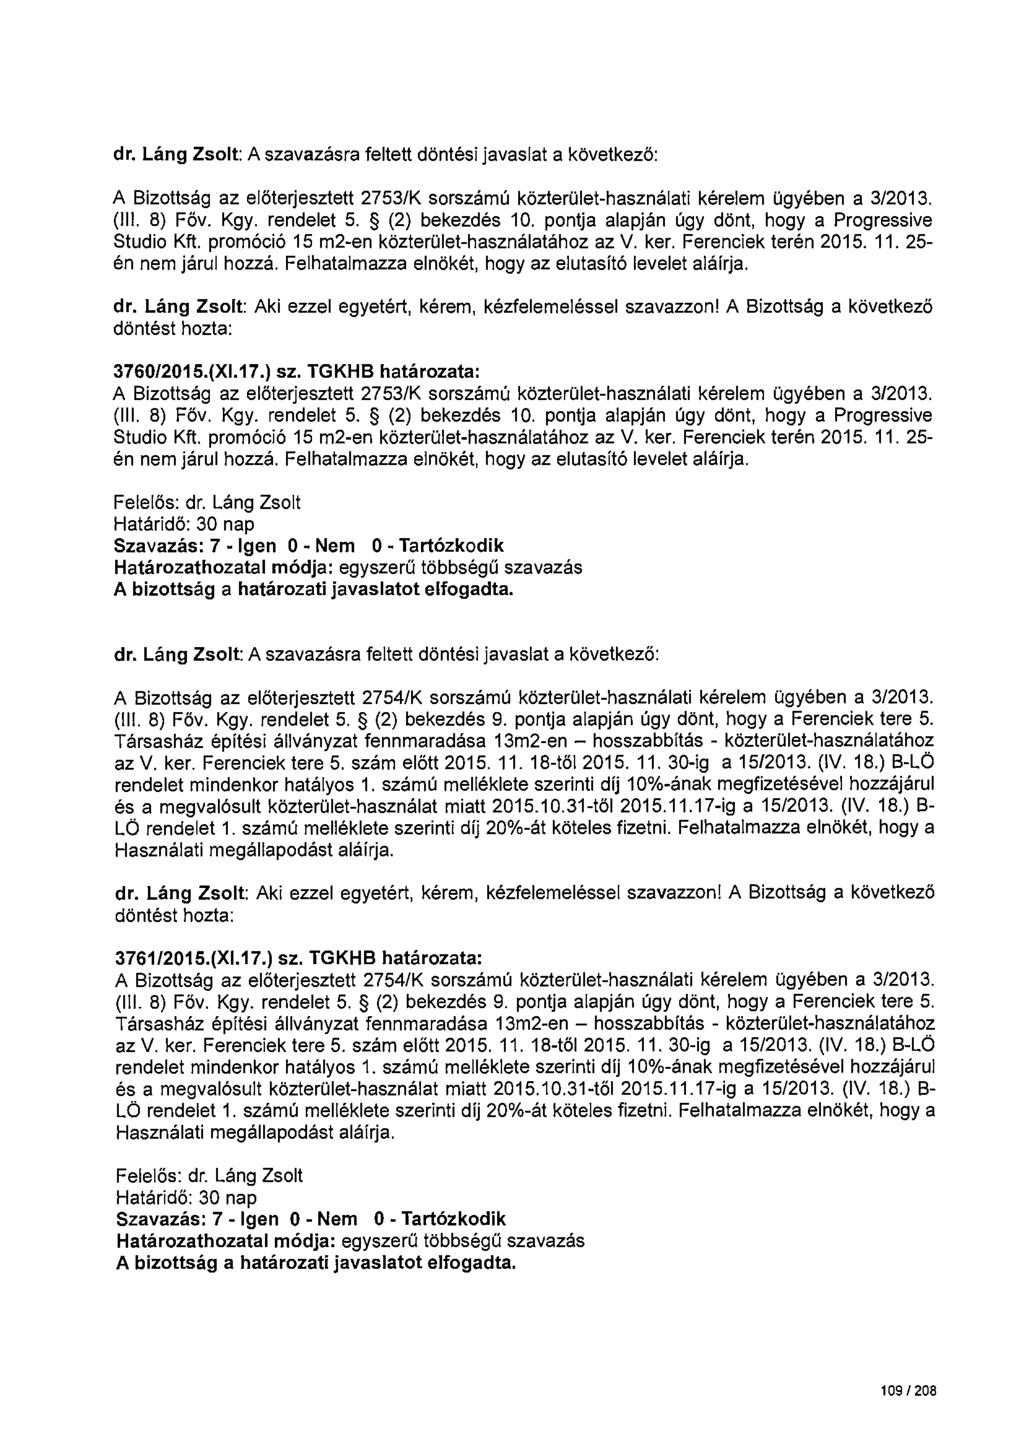 dr. Láng Zsolt: A szavazásra feltett döntési javaslat a következö: A Bizottság az elöterjesztett 2753/K sorszámú közterület-használati kérelem ügyében a 3/2013. (Ill. 8) Föv. Kgy. rendelet 5.